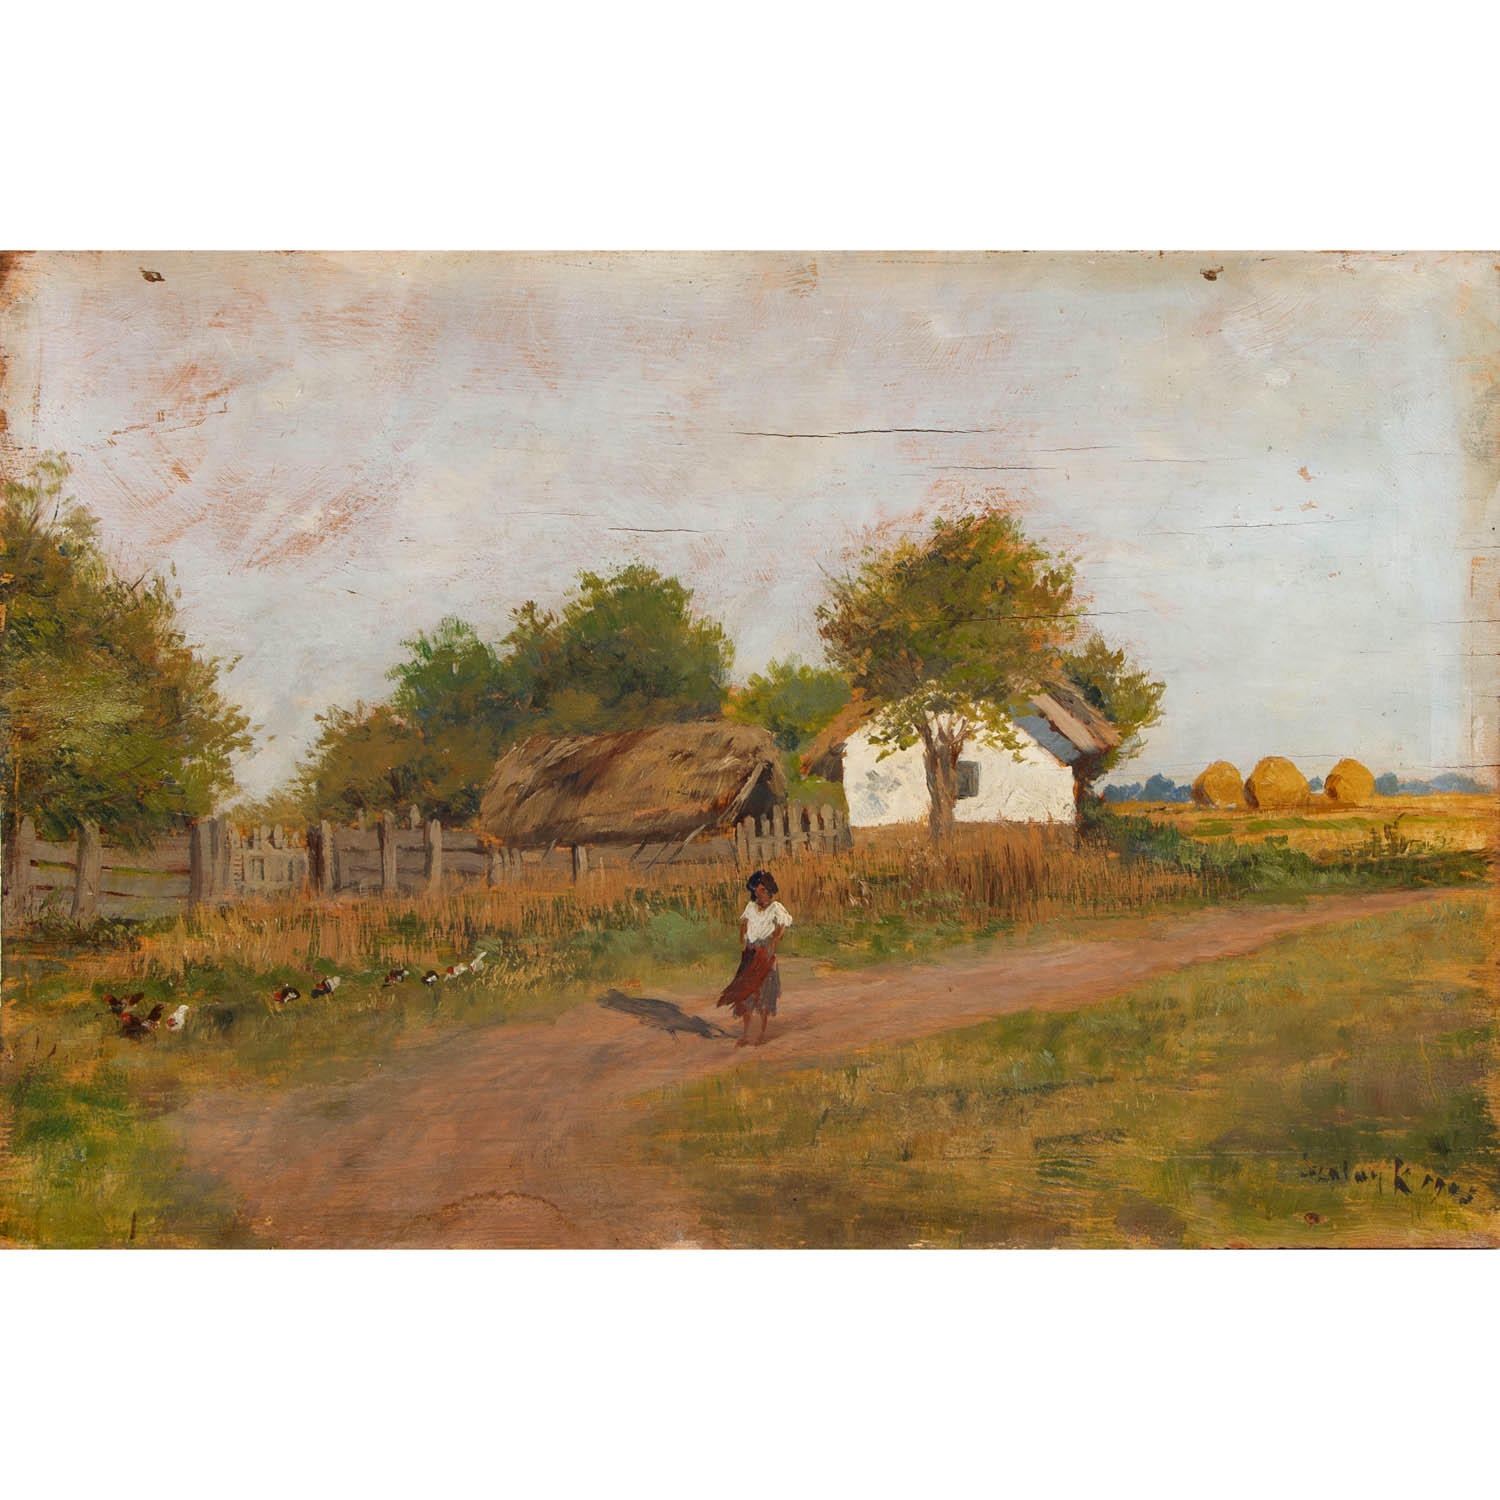 SZALAY, KAROLY (1863-?), 